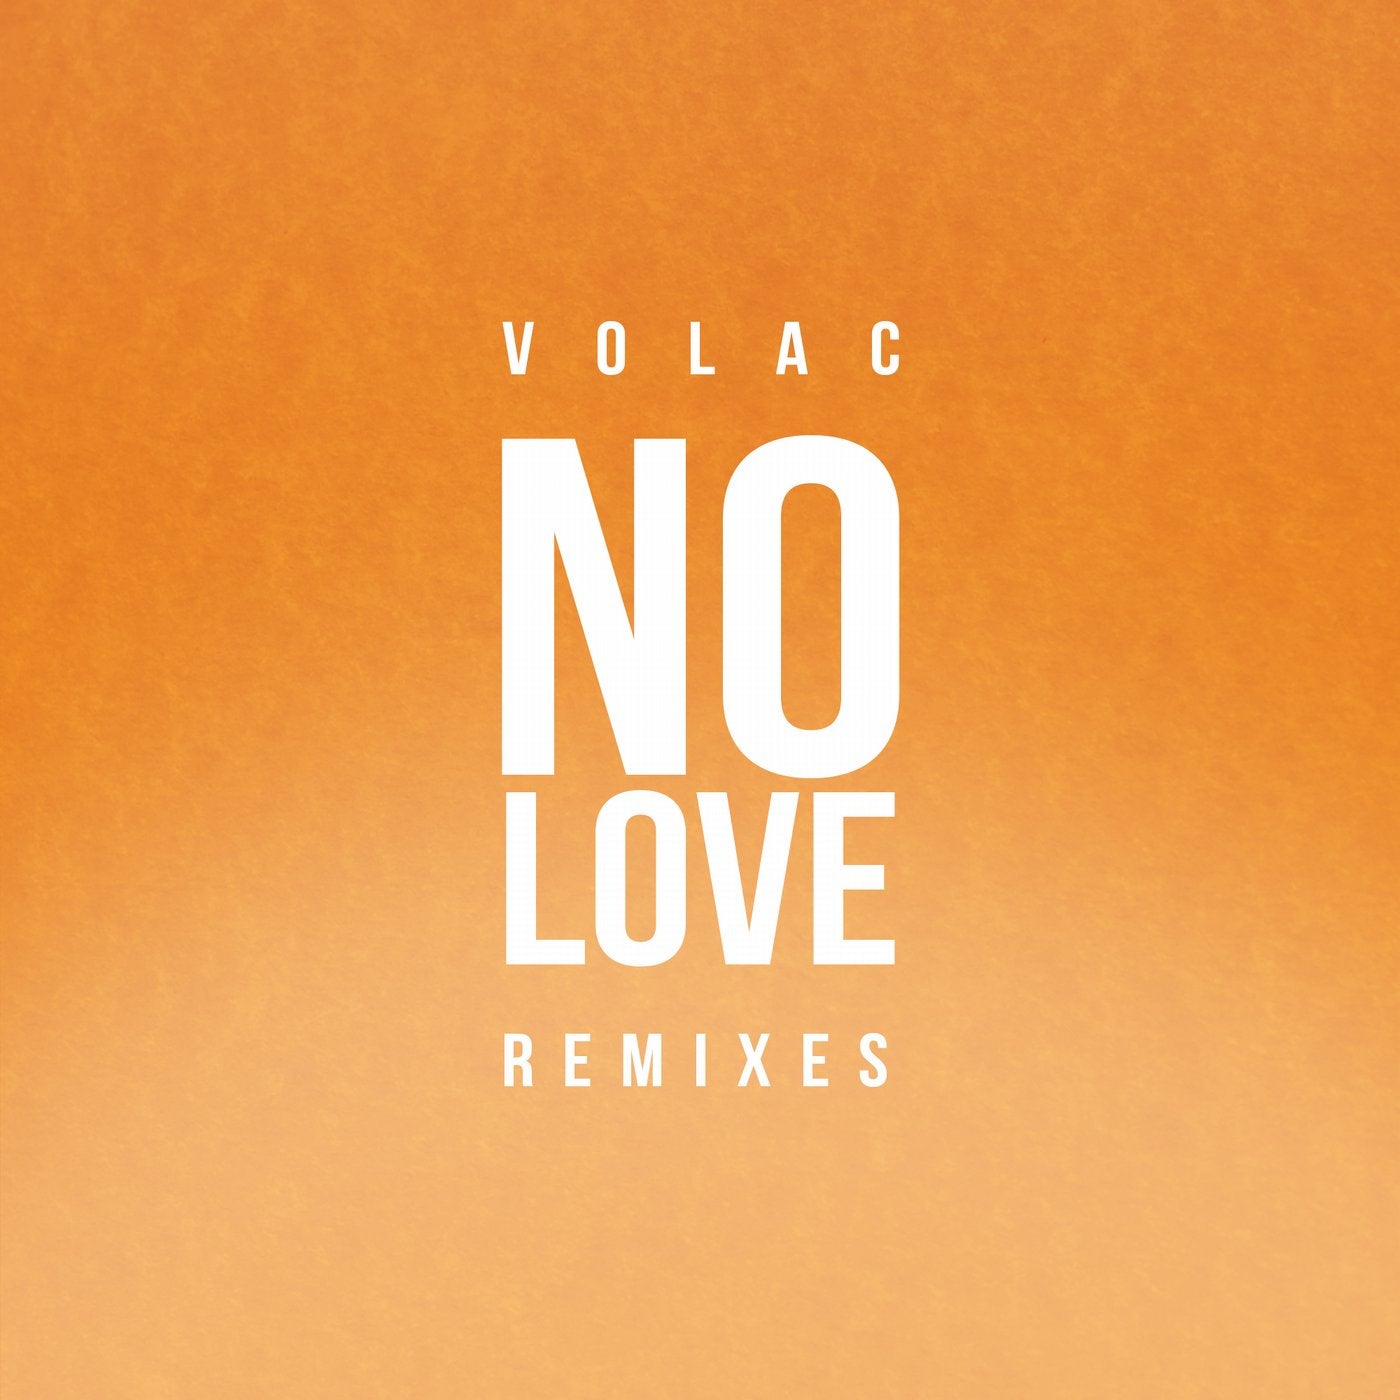 Фото no Love. Volac. Love Remix. Volac обложки альбома.